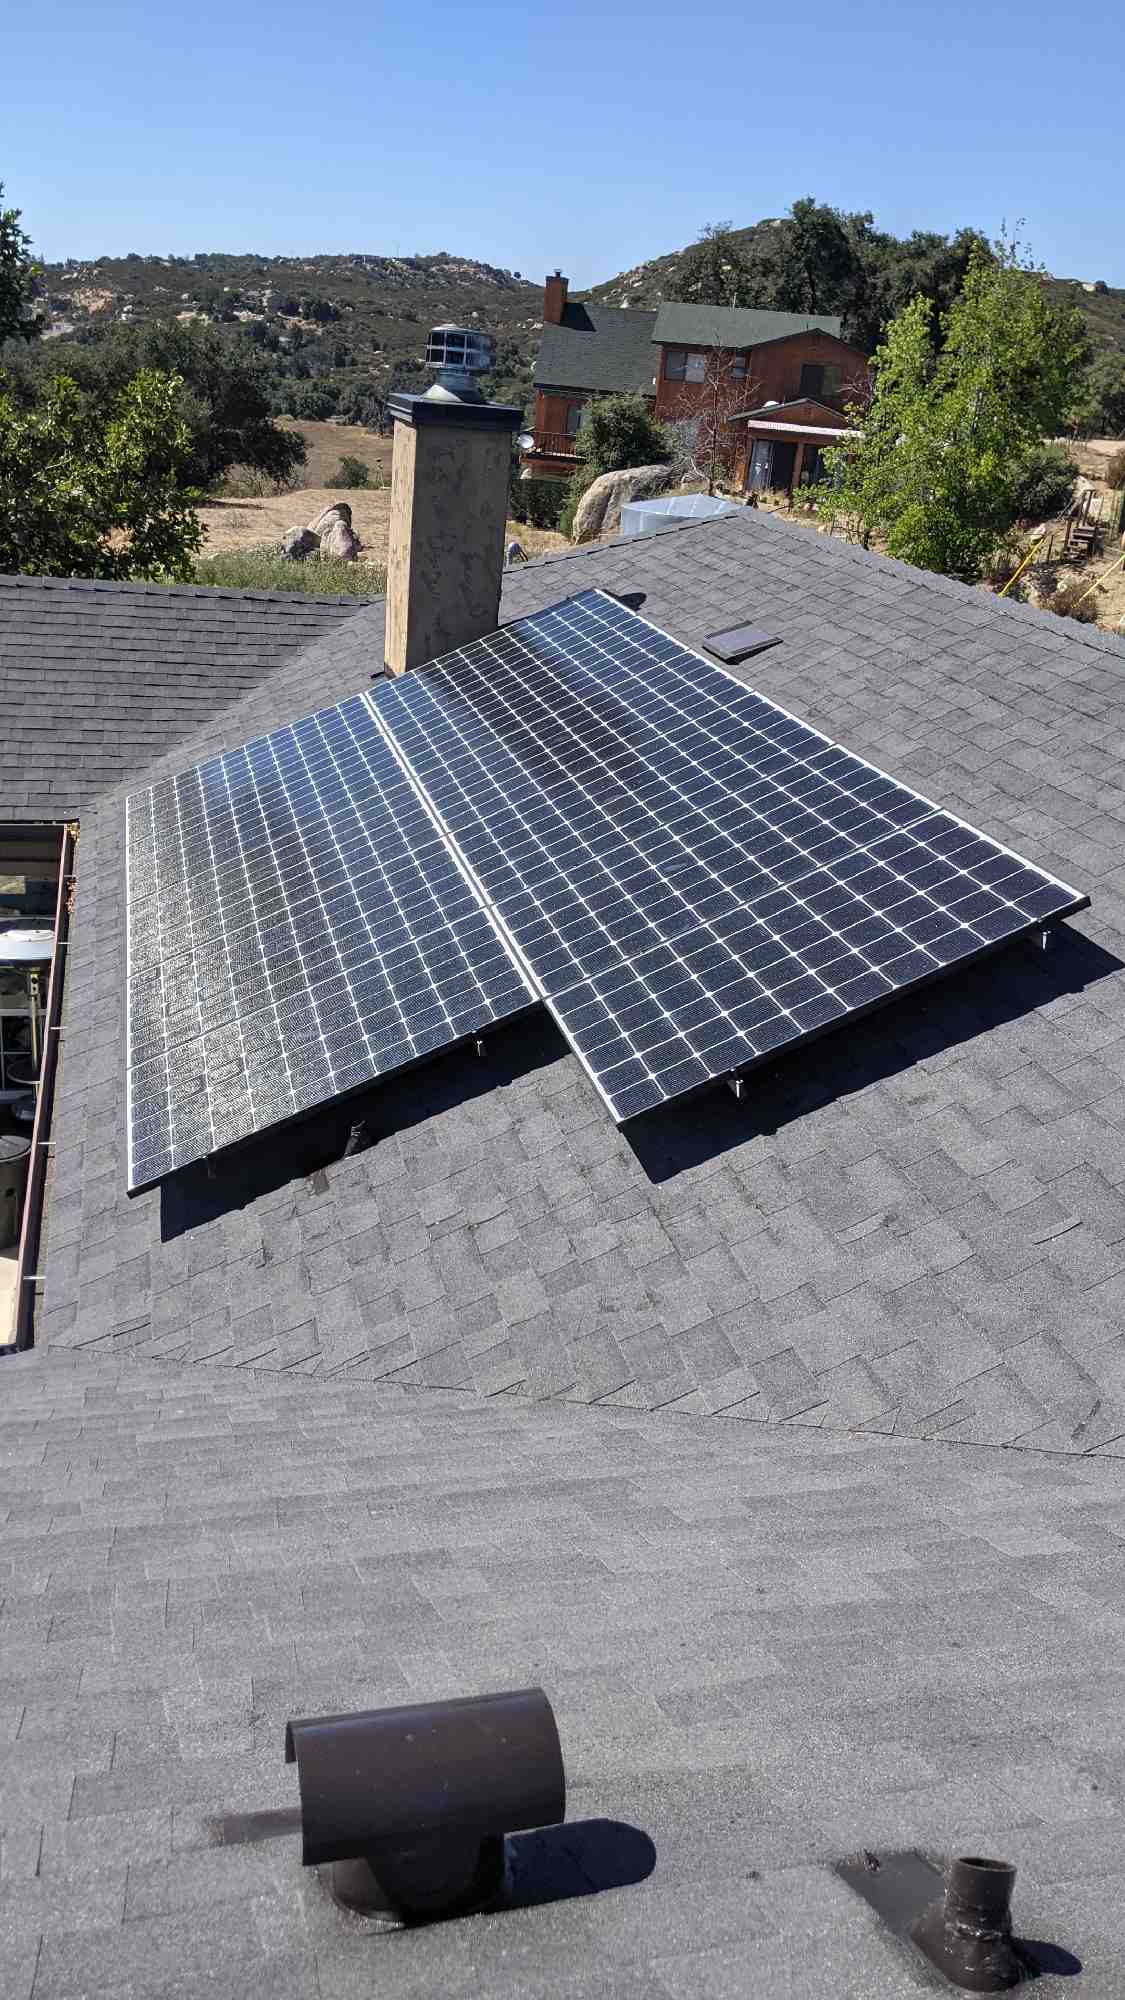 How many solar panels do I need for 5000 watts?